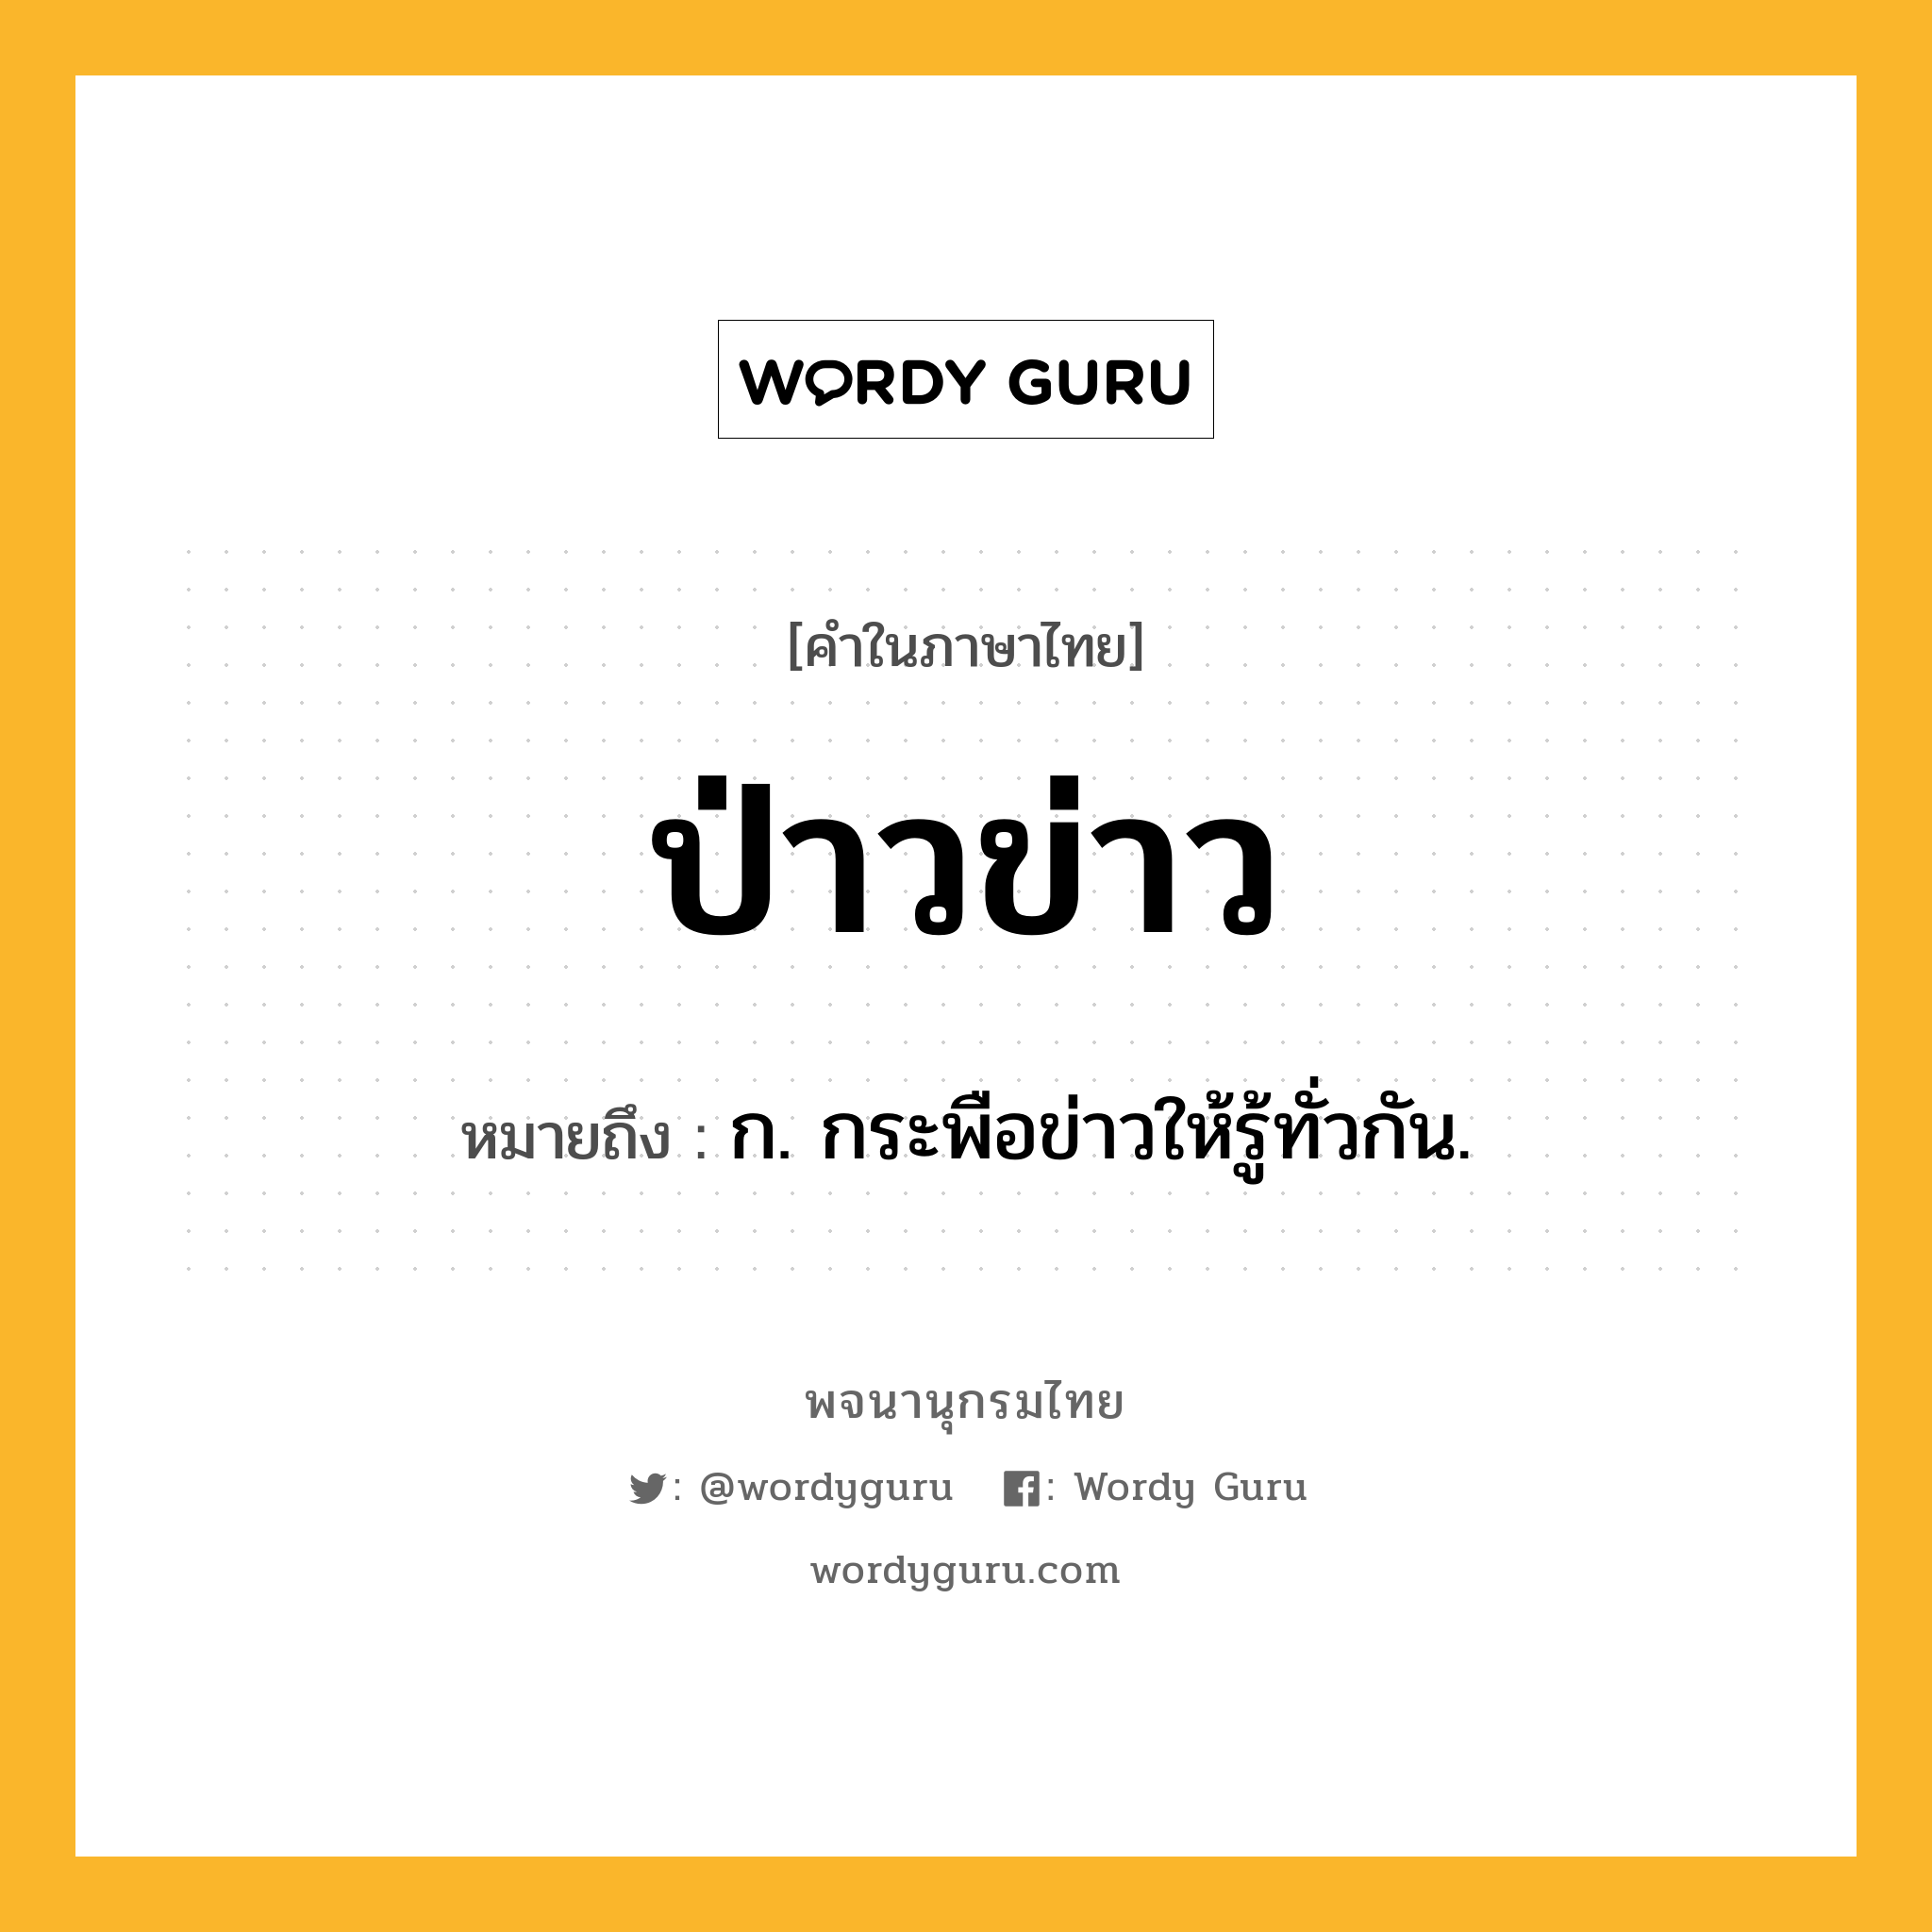 ป่าวข่าว หมายถึงอะไร?, คำในภาษาไทย ป่าวข่าว หมายถึง ก. กระพือข่าวให้รู้ทั่วกัน.